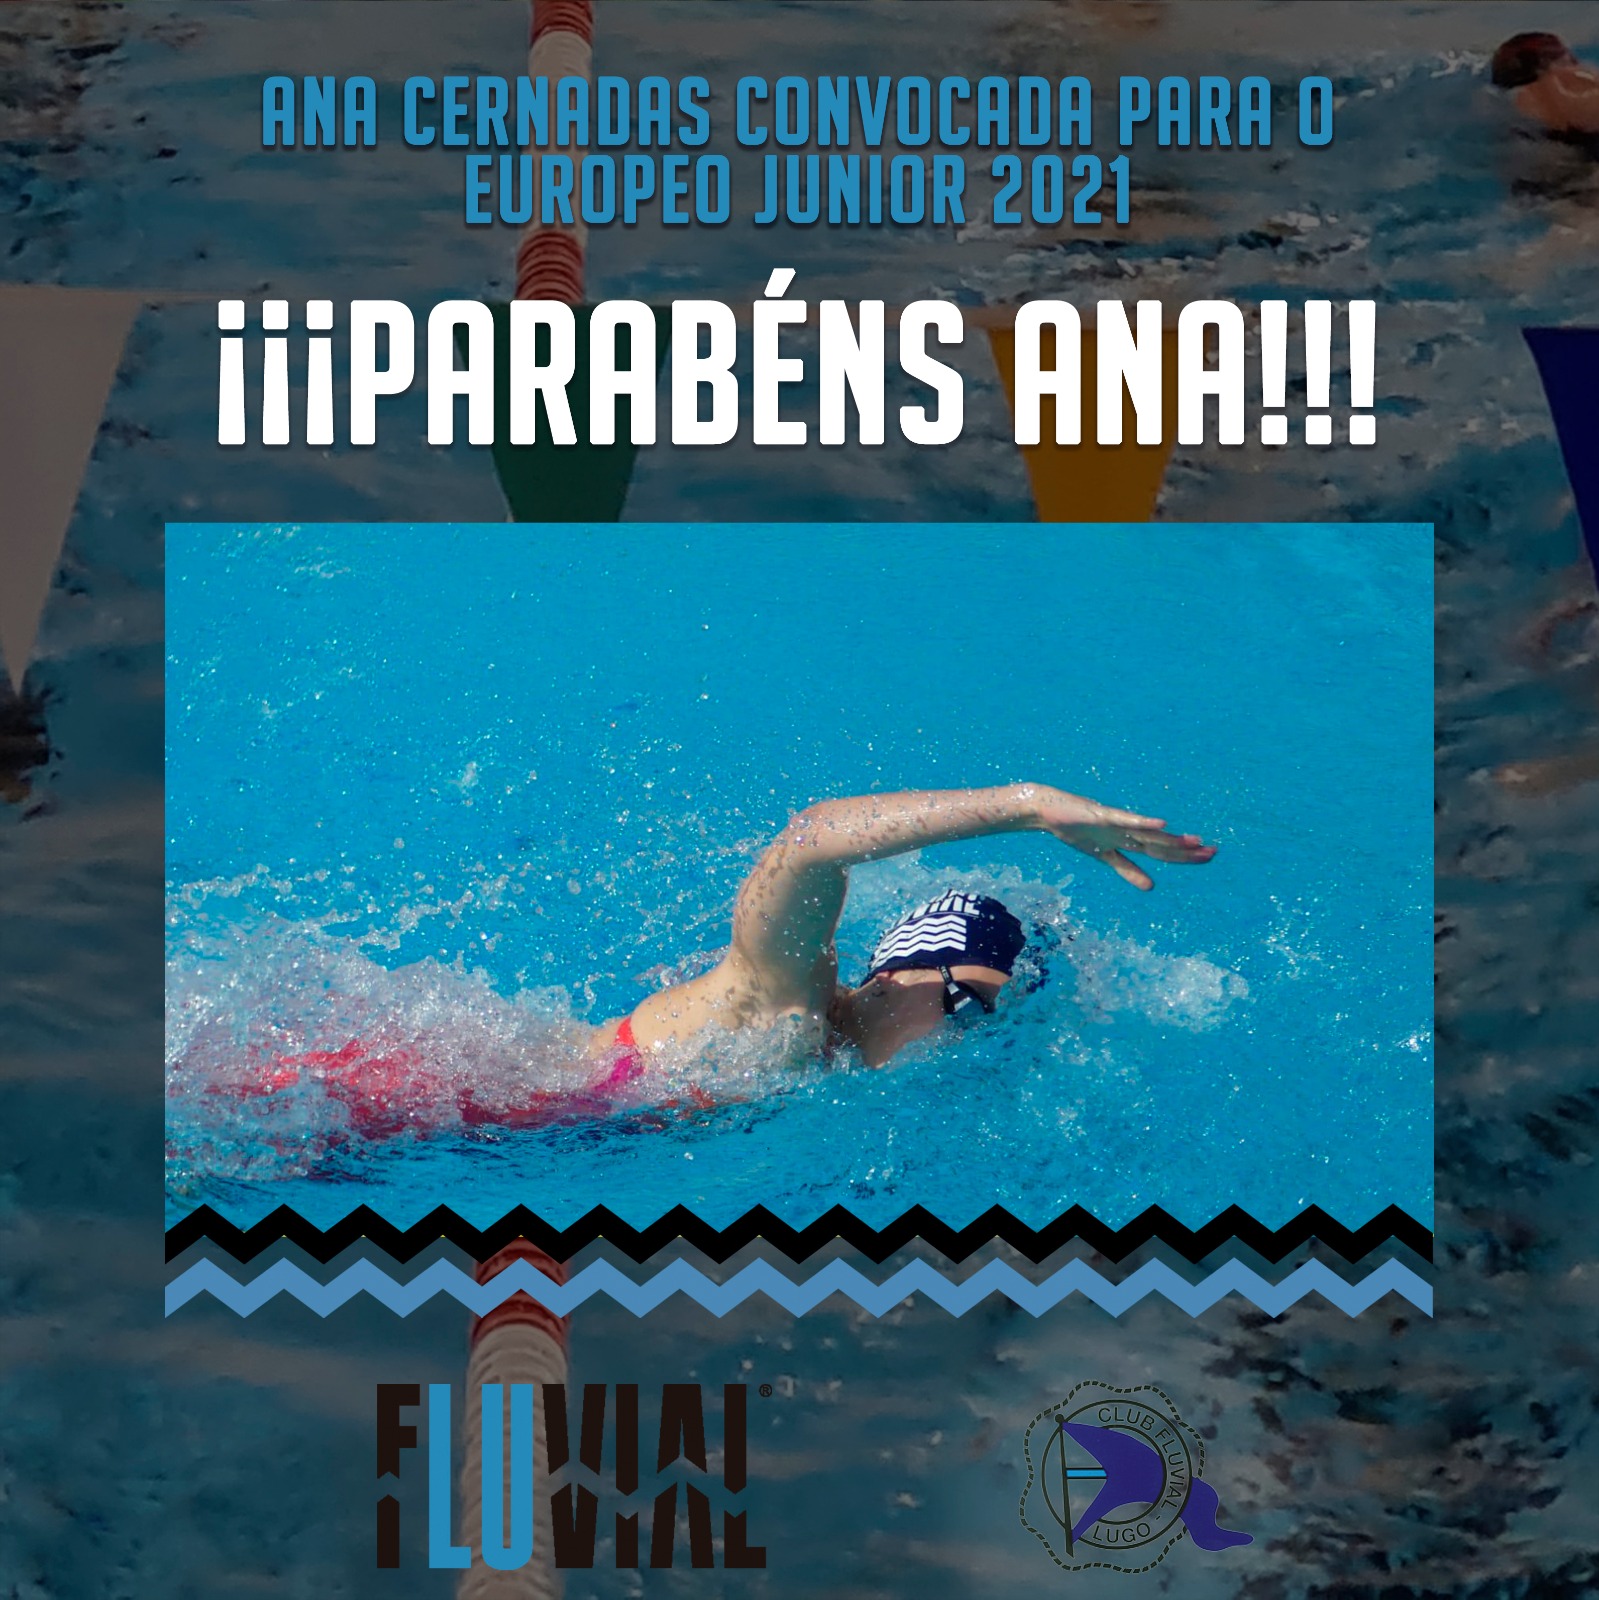 Ana Cernandas Convocada pola Fed.Española de Natación para o Campeonato de Europa Junior